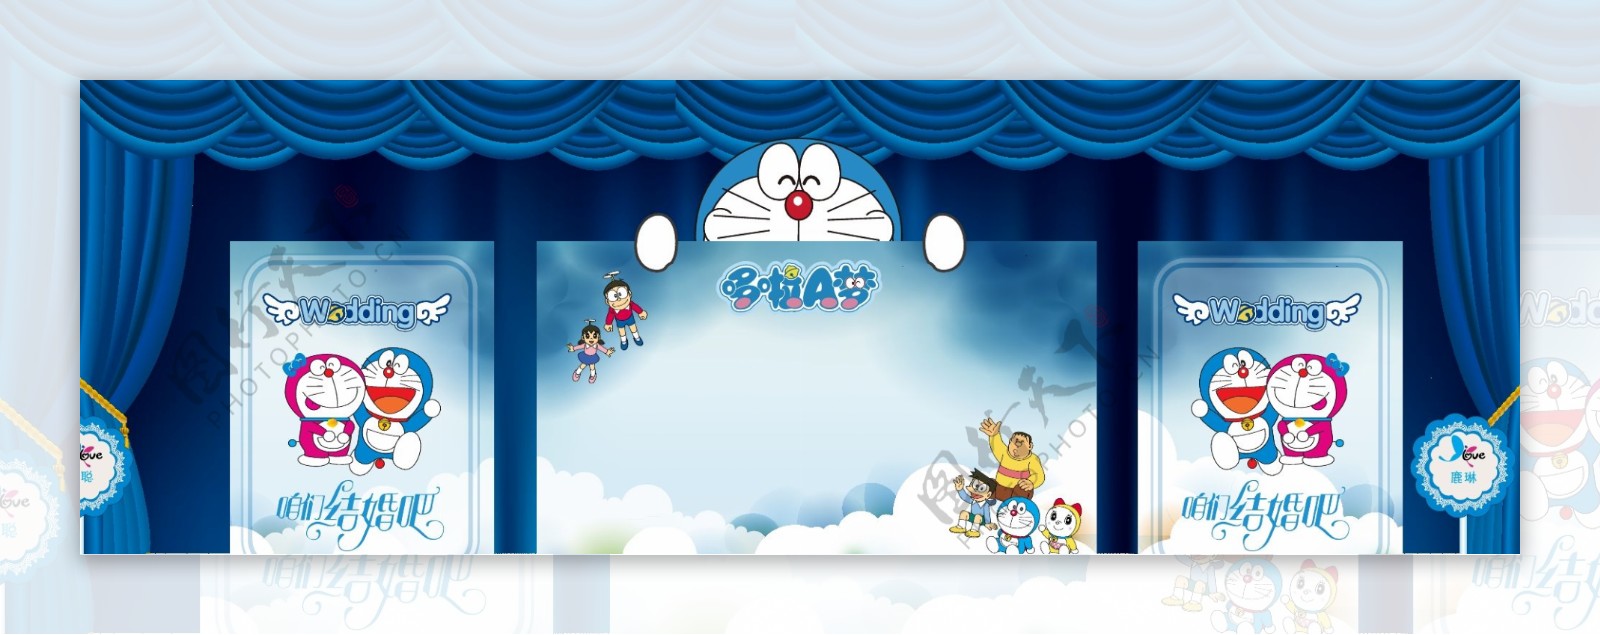 哆啦A梦主题婚礼设计全图